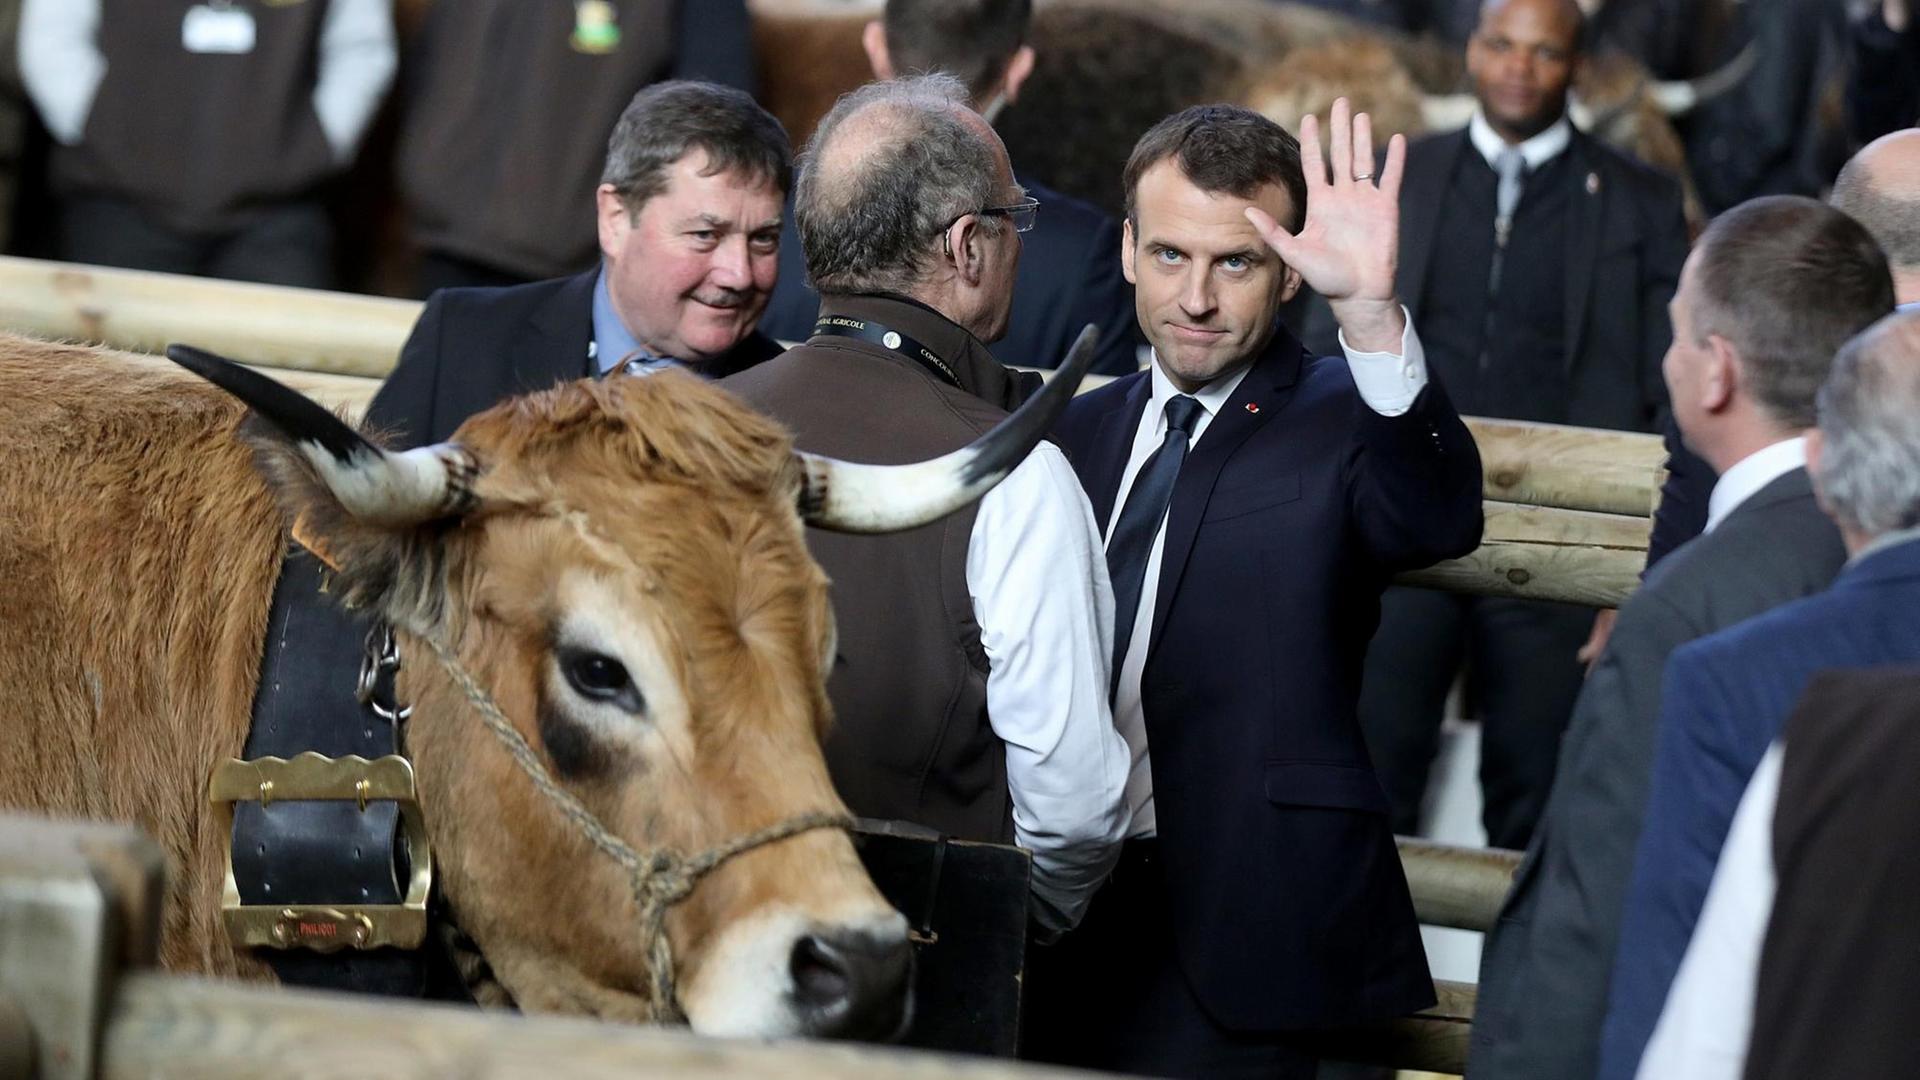 Emmanuel Macron steht am 24.02.2018 auf der französischen Landwirtschaftsmesse neben einem Ochsen und winkt in die Kamera